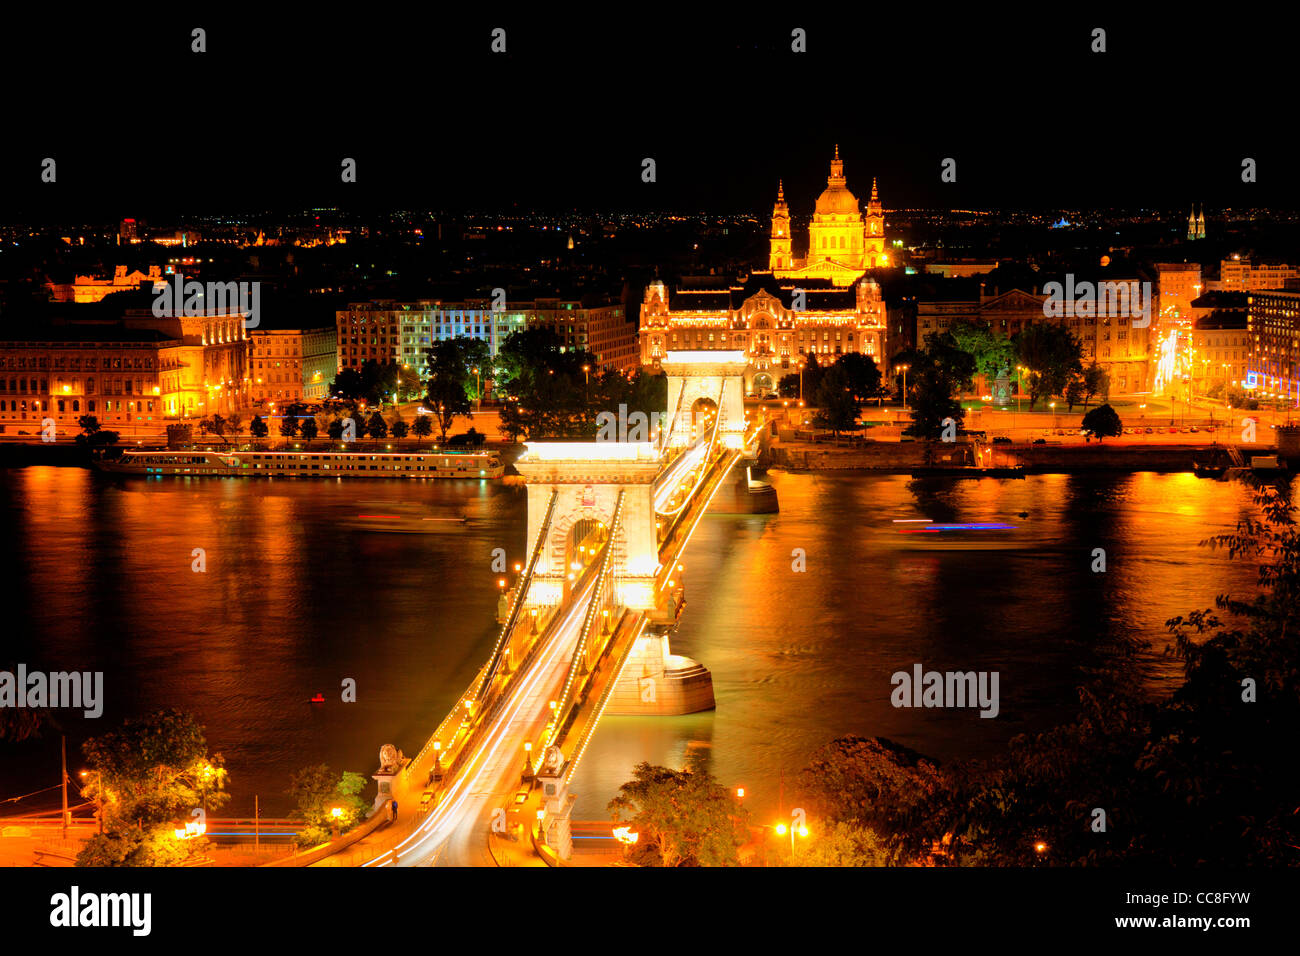 Le Pont des chaînes Széchenyi Lánchid (Hongrois :) est un pont suspendu qui enjambe le Danube entre Buda et Pest. Nuit Banque D'Images